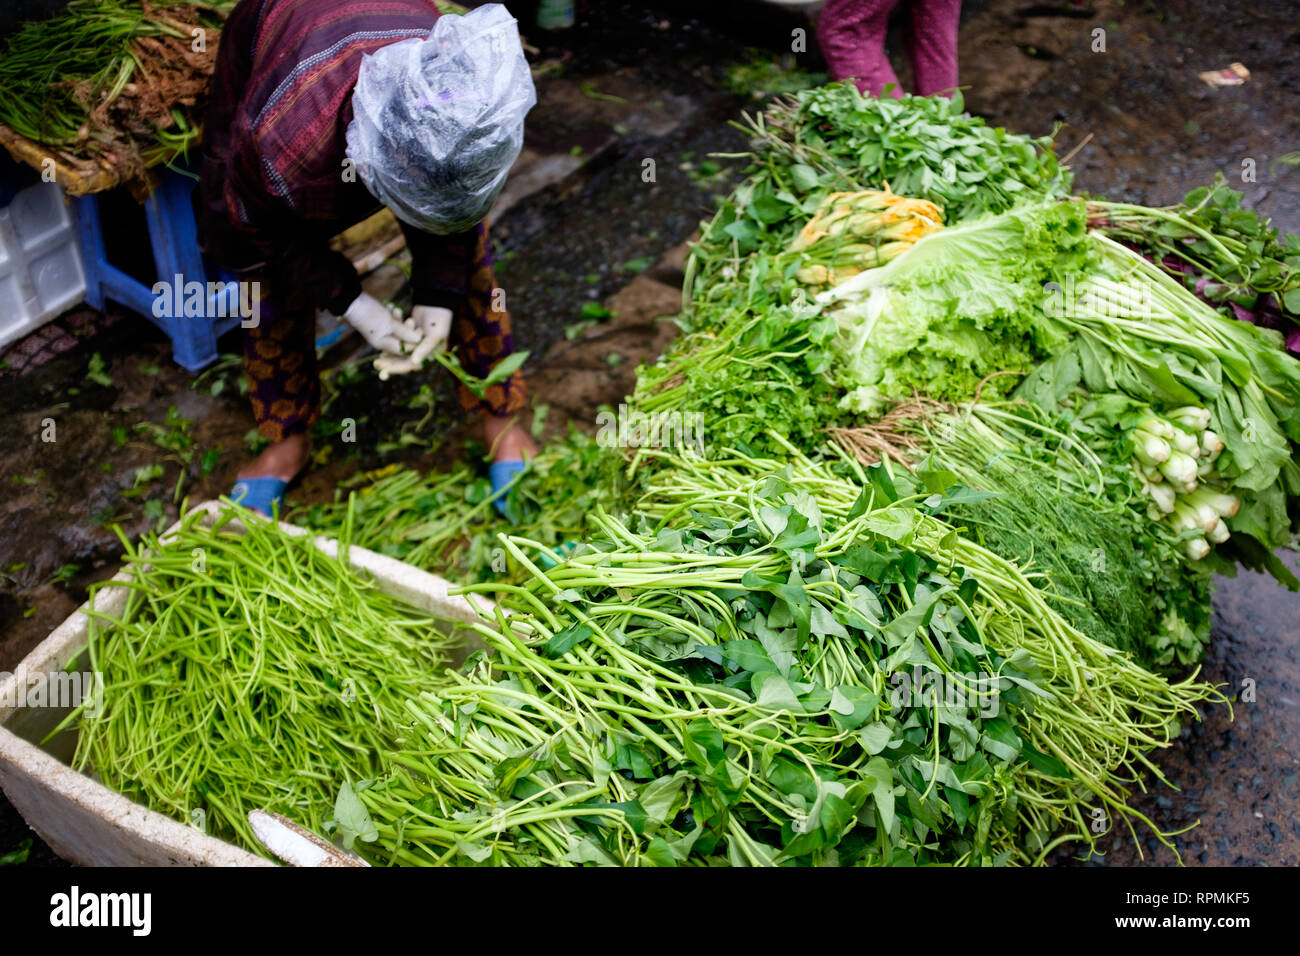 2 janvier 2019, Ho Chi Minh City, Vietnam - une dame vendant des légumes verts à un marché de rue. Banque D'Images